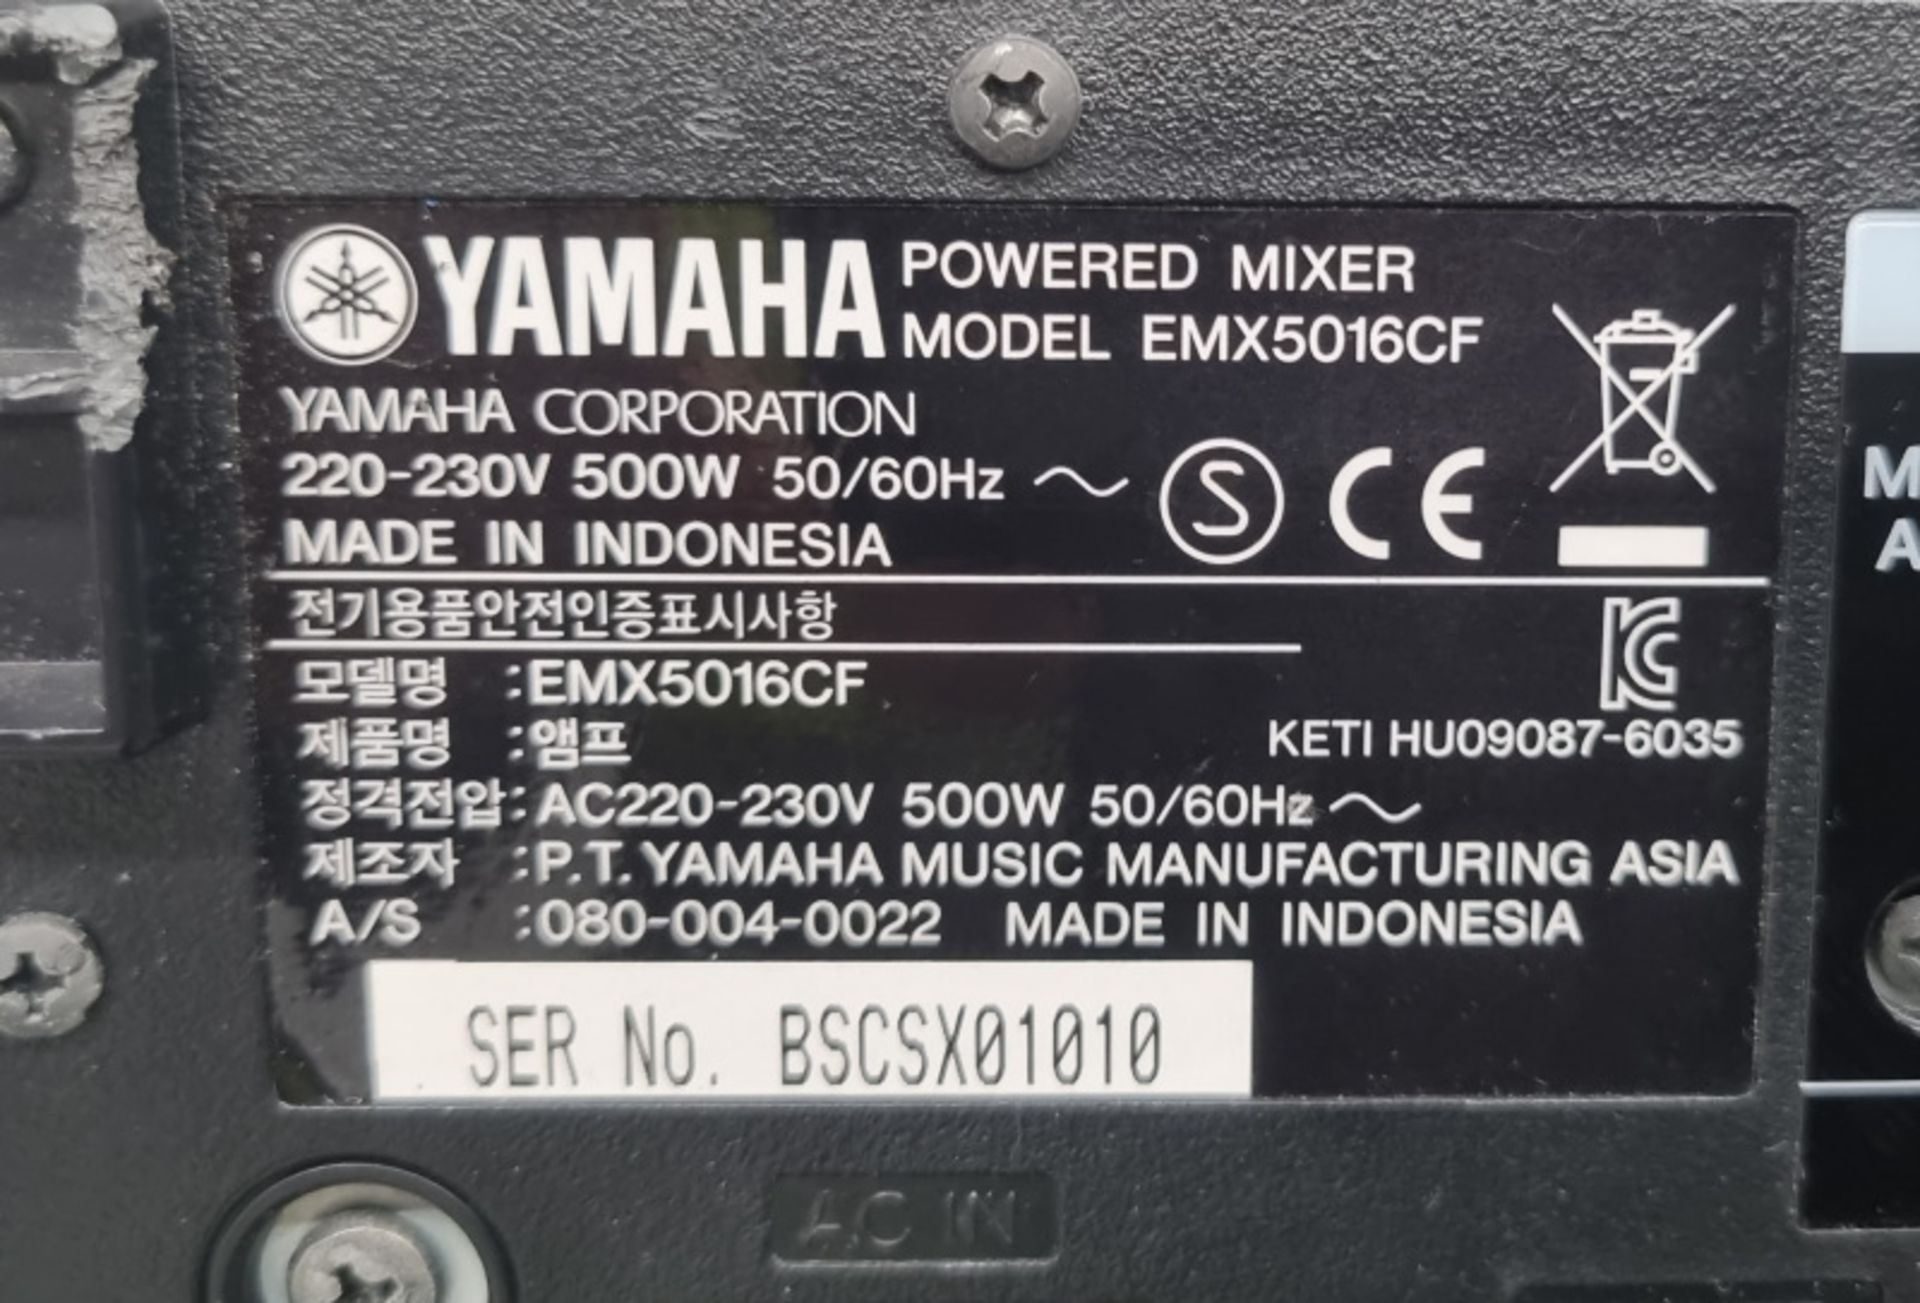 Yamaha EMX5016CF Powered Mixer - Serial No. BSCSX01010 - Image 4 of 5